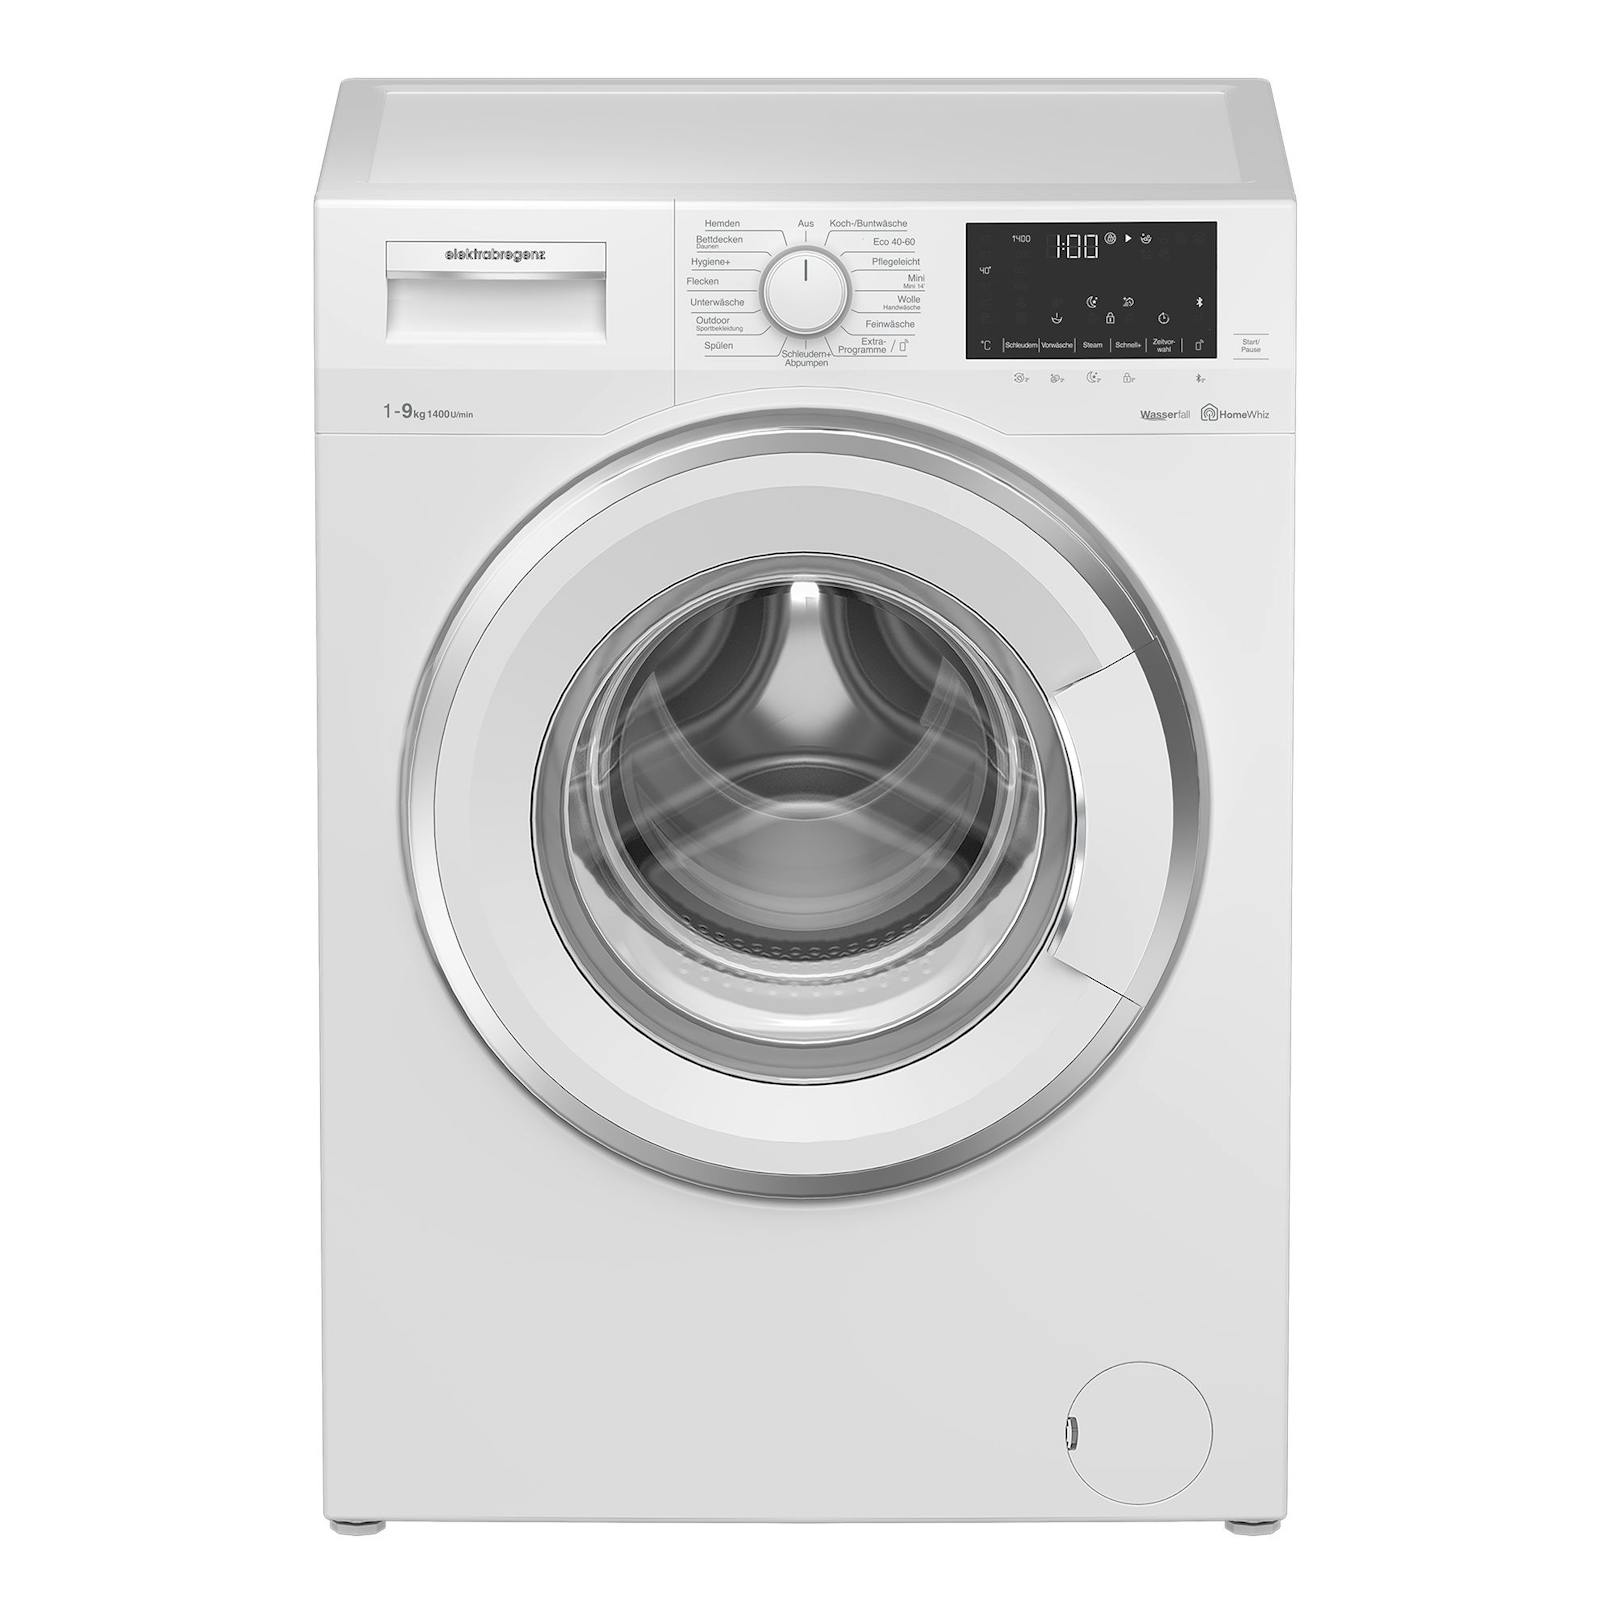 elektrabregenz bringt neue Waschmaschine auf den Markt.